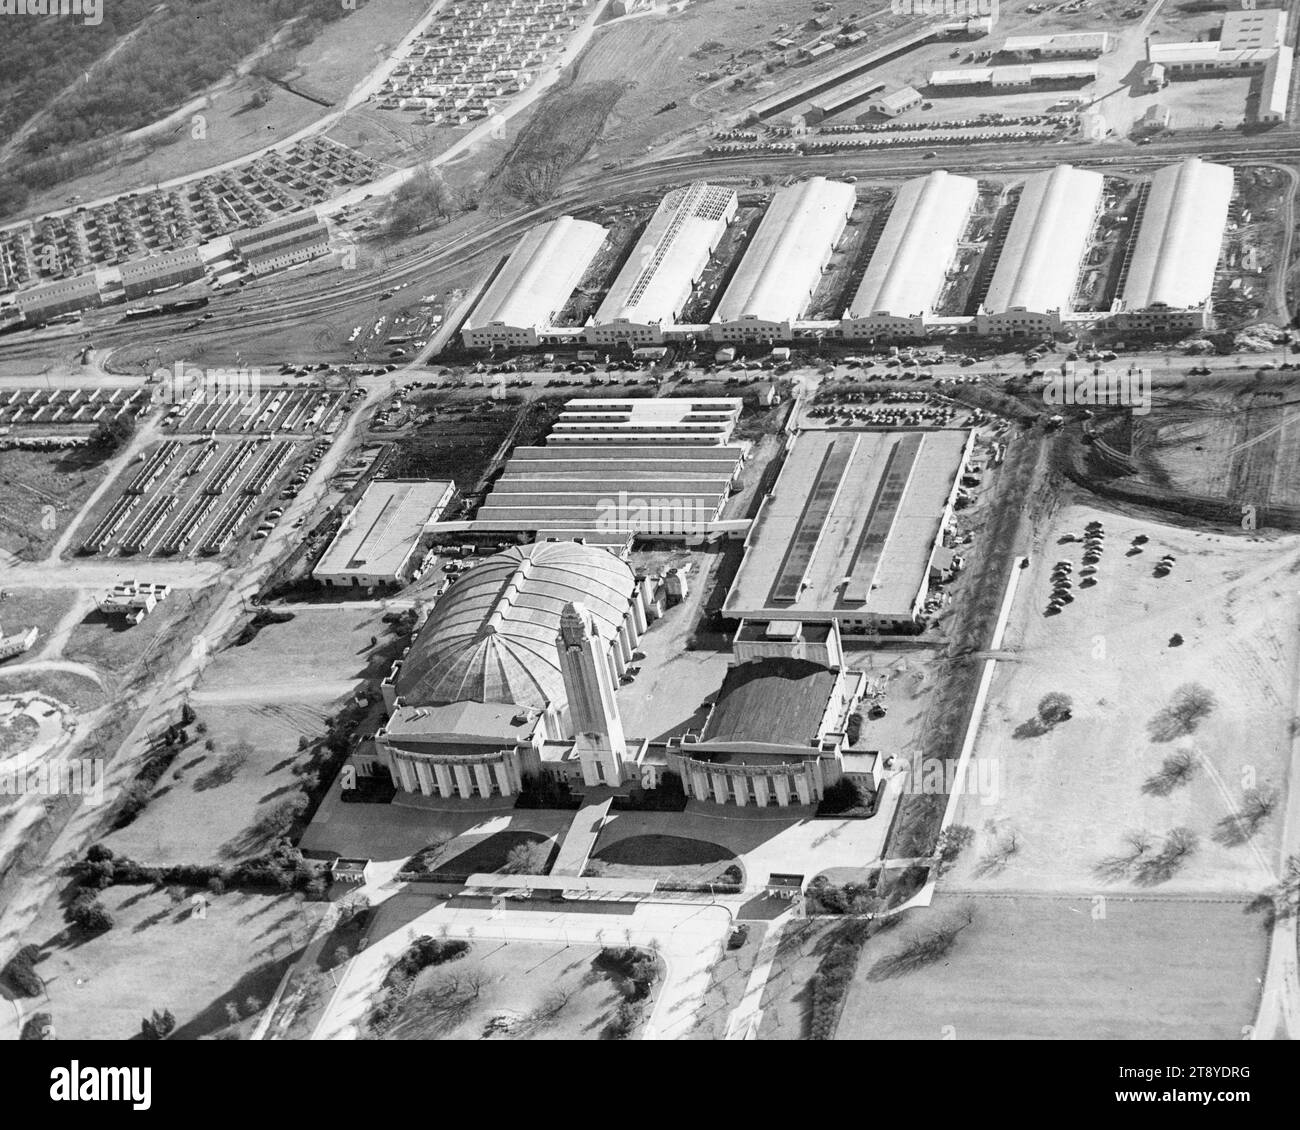 Aus der Vogelperspektive des will Rogers Memorial Coliseum, wo die Southwestern Exposition und die Fat Stock Shows stattfinden, Fort Worth, Texas, um 1950. Foto von der United States Information Agency Stockfoto